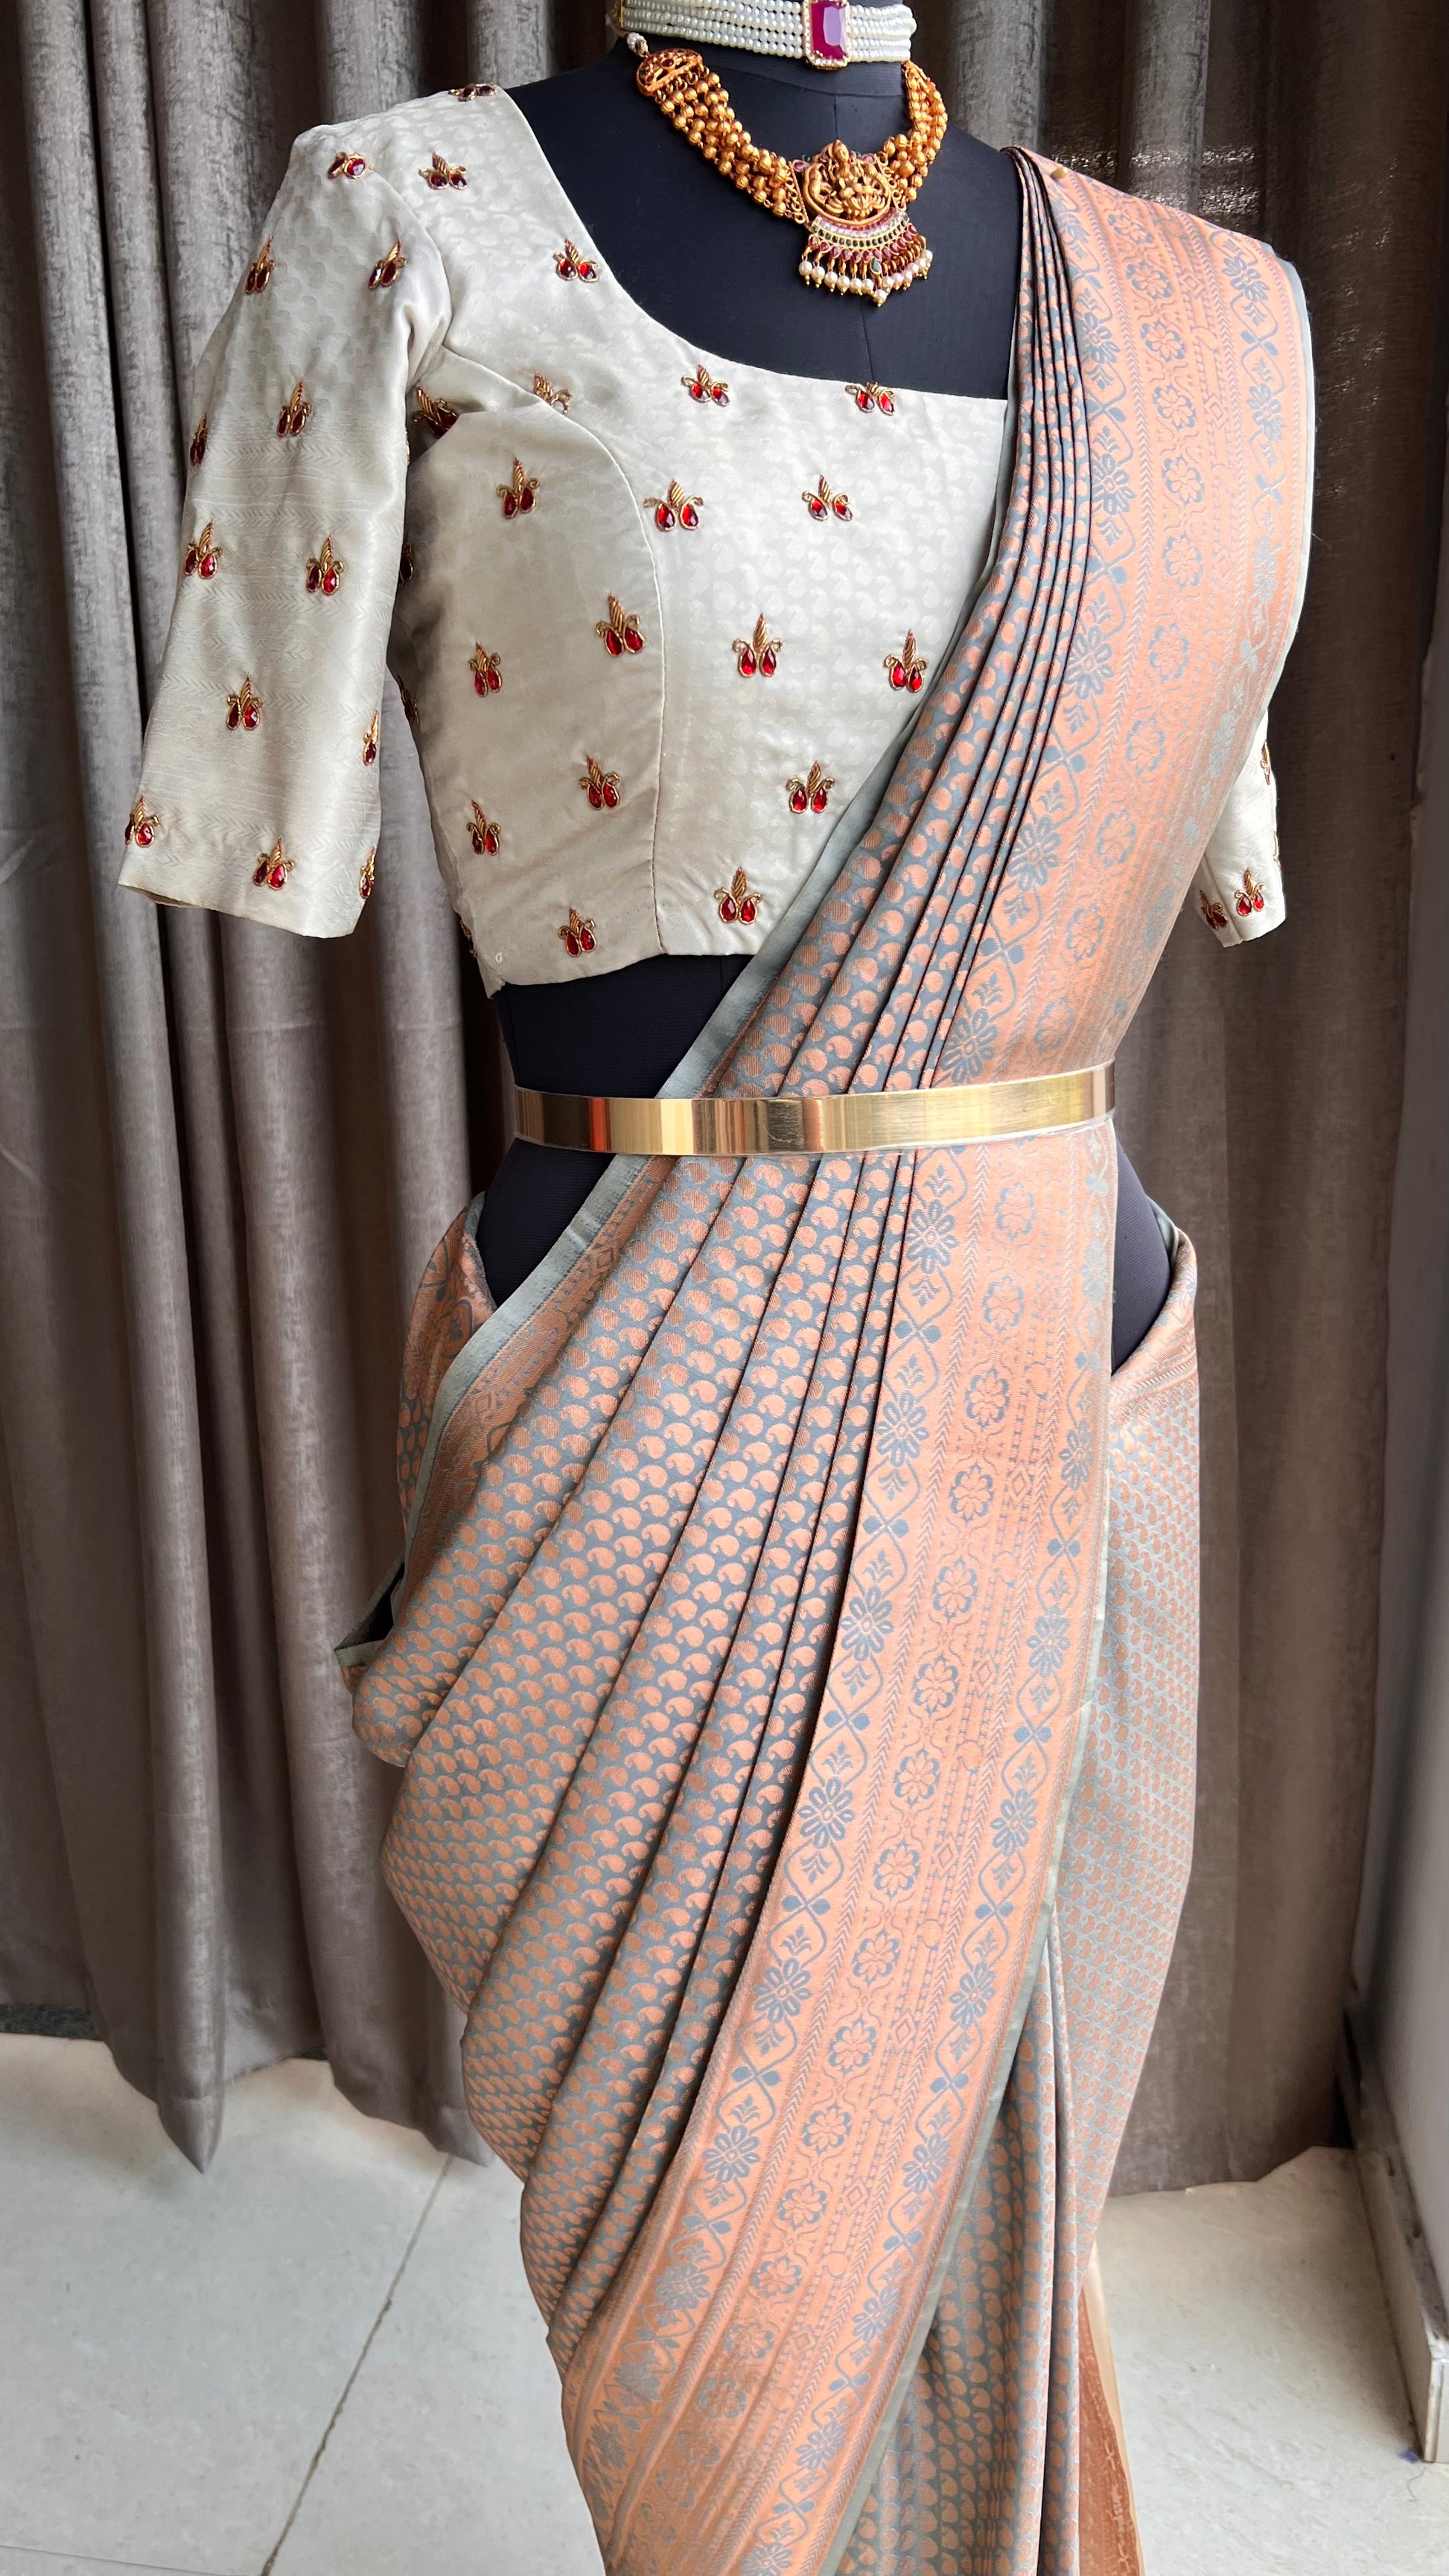 Cotton saree draping tips for beginners// . . . . . . #saree